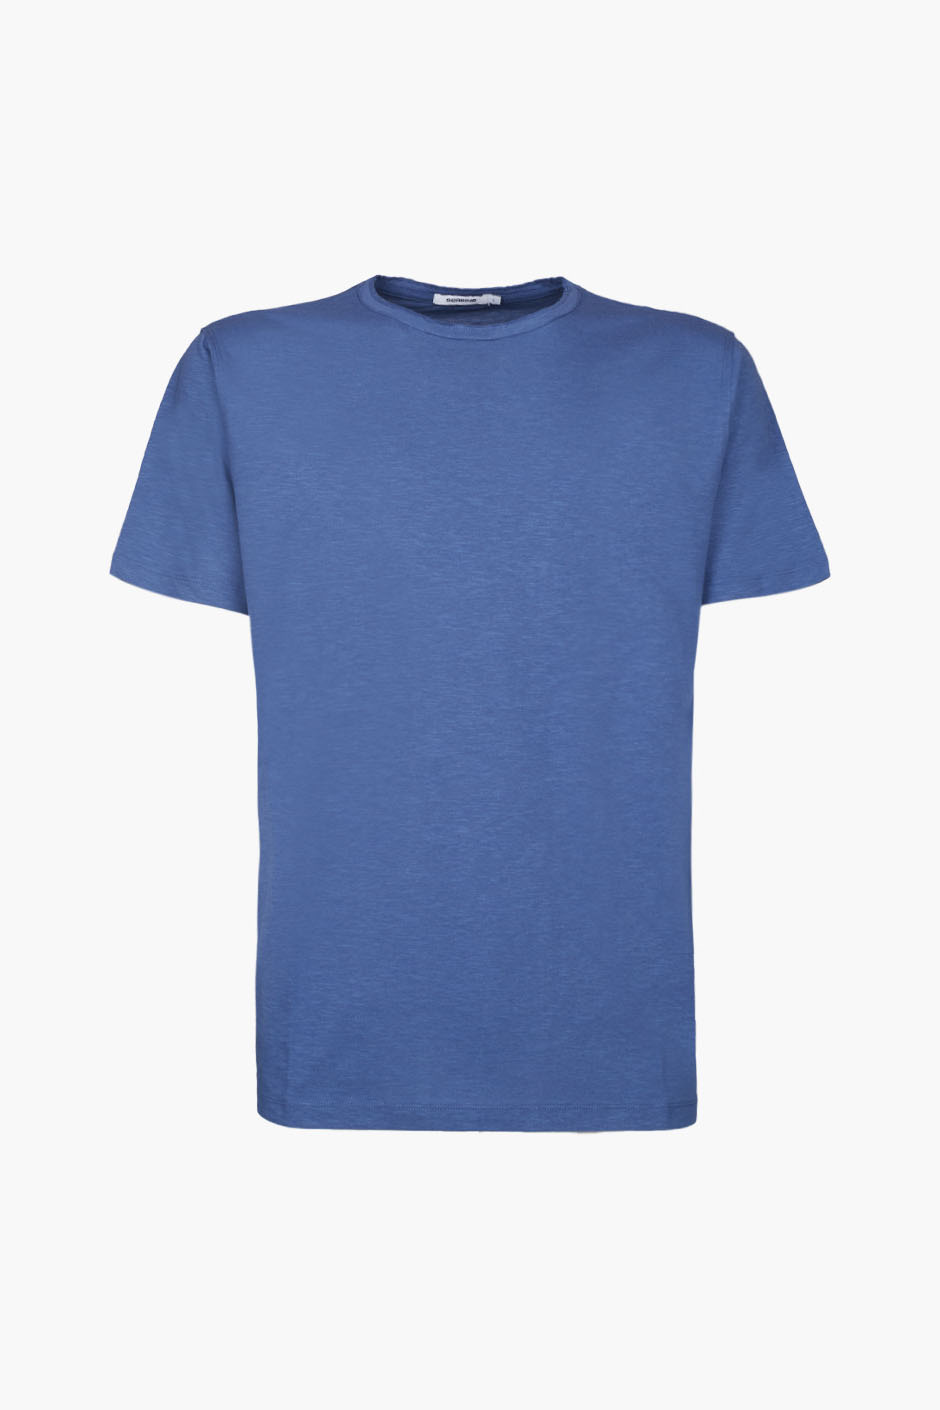 Camiseta de la marca Sorbino Azul